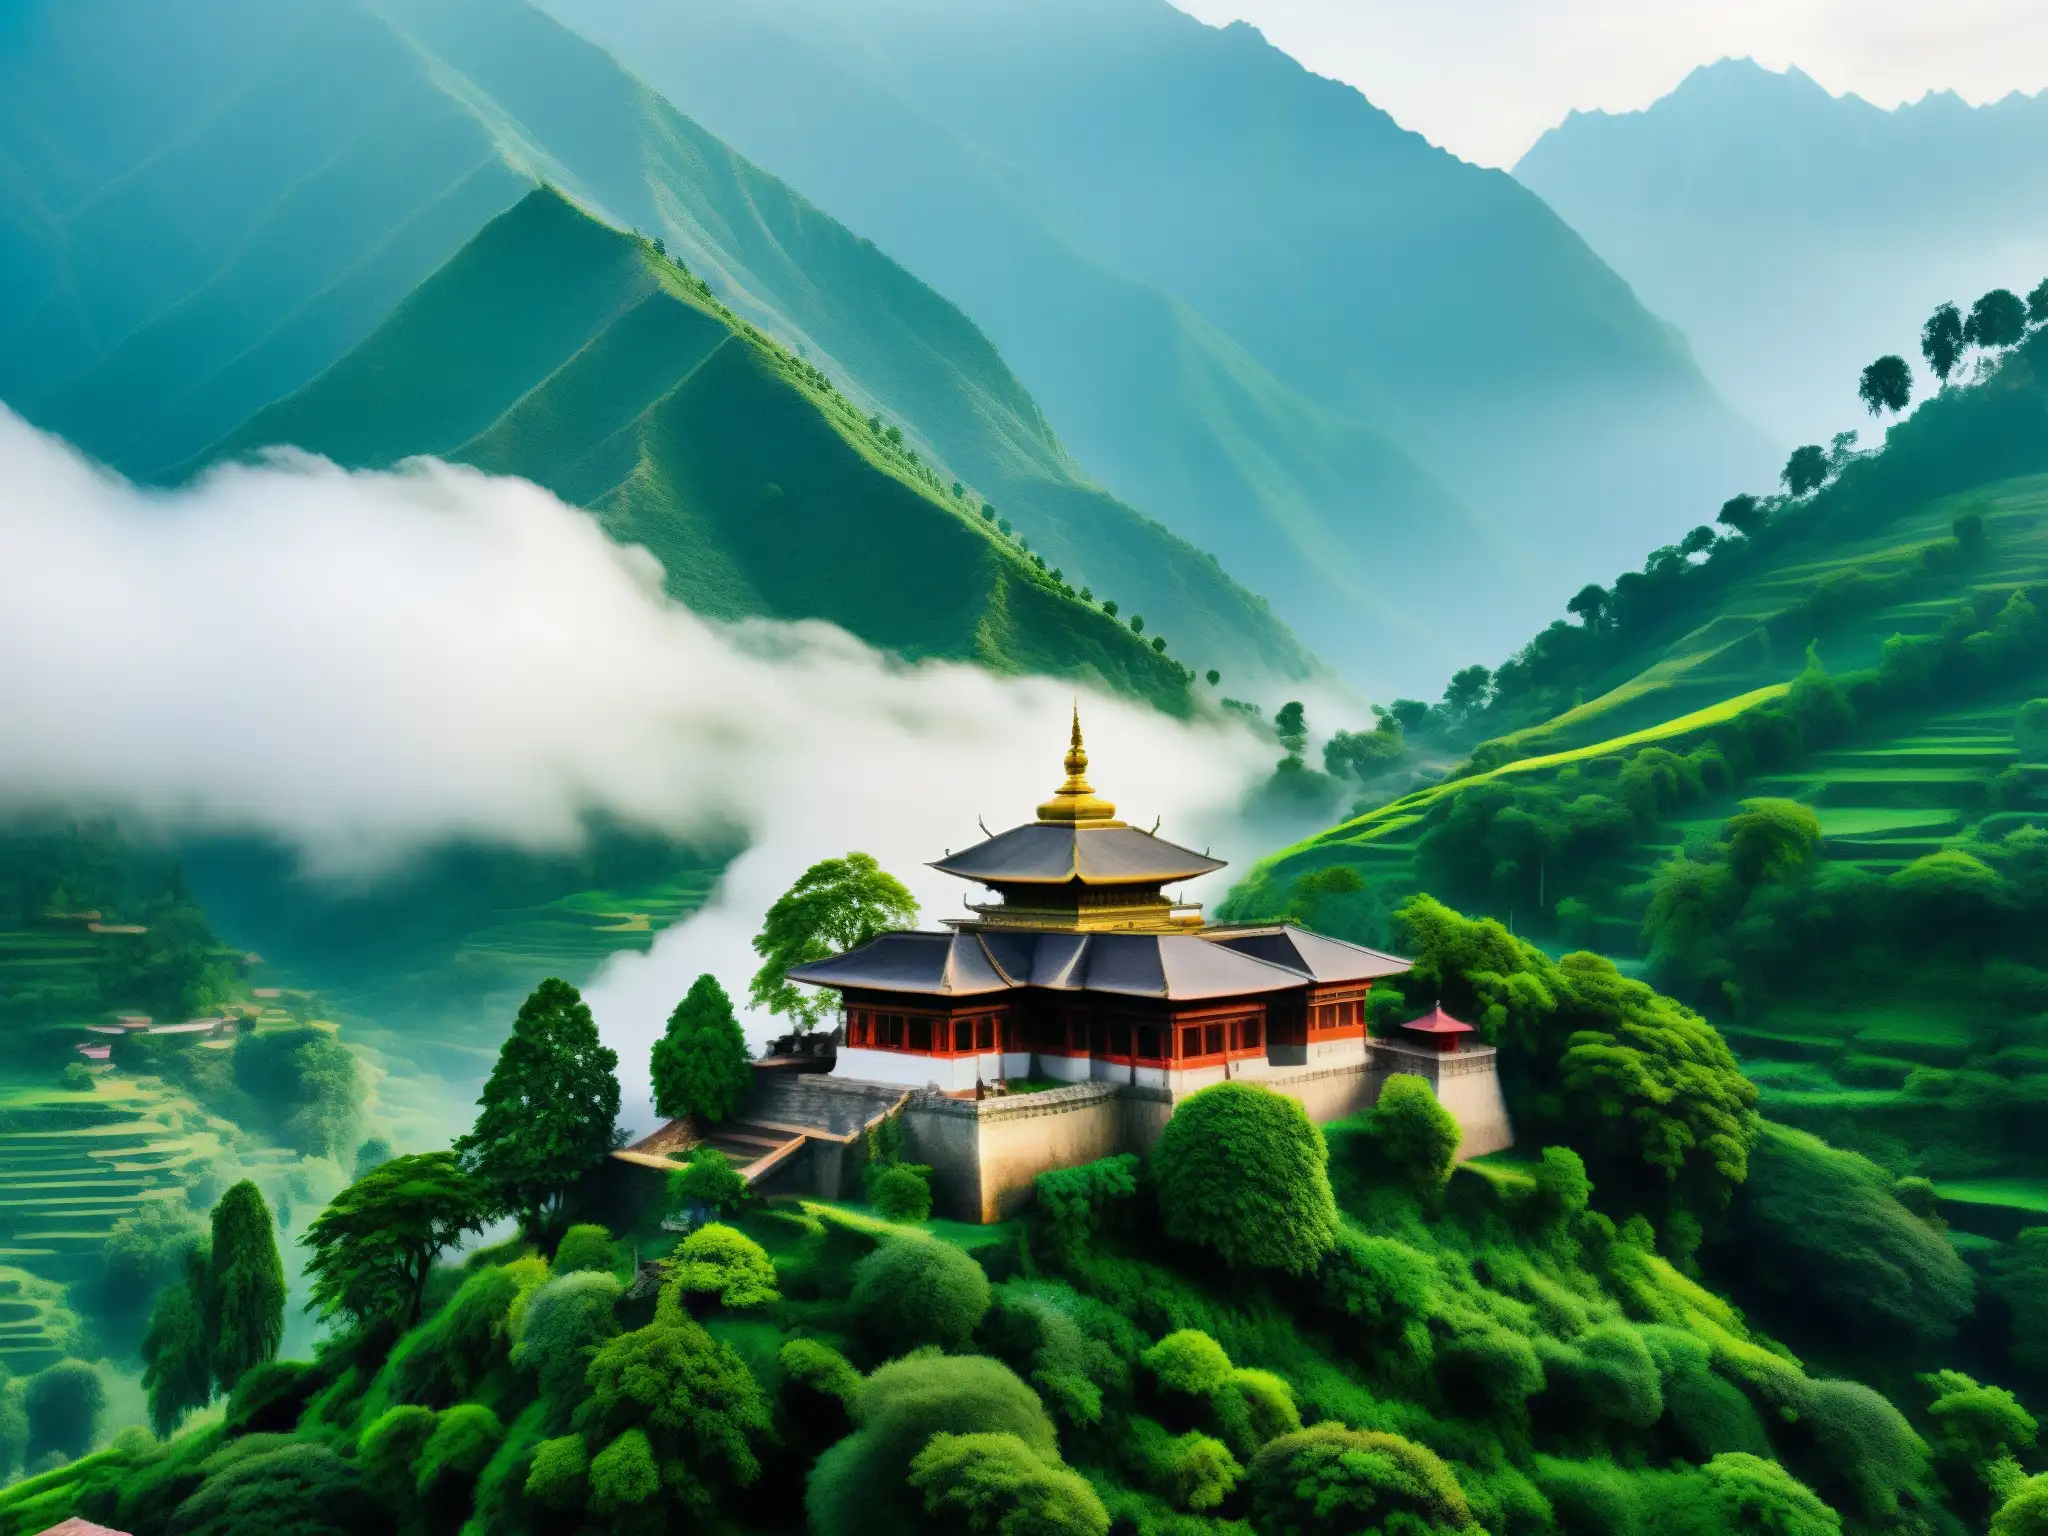 Imagen impactante del Valle de los Inmortales en India, con exuberante paisaje montañoso, neblina y templo antiguo